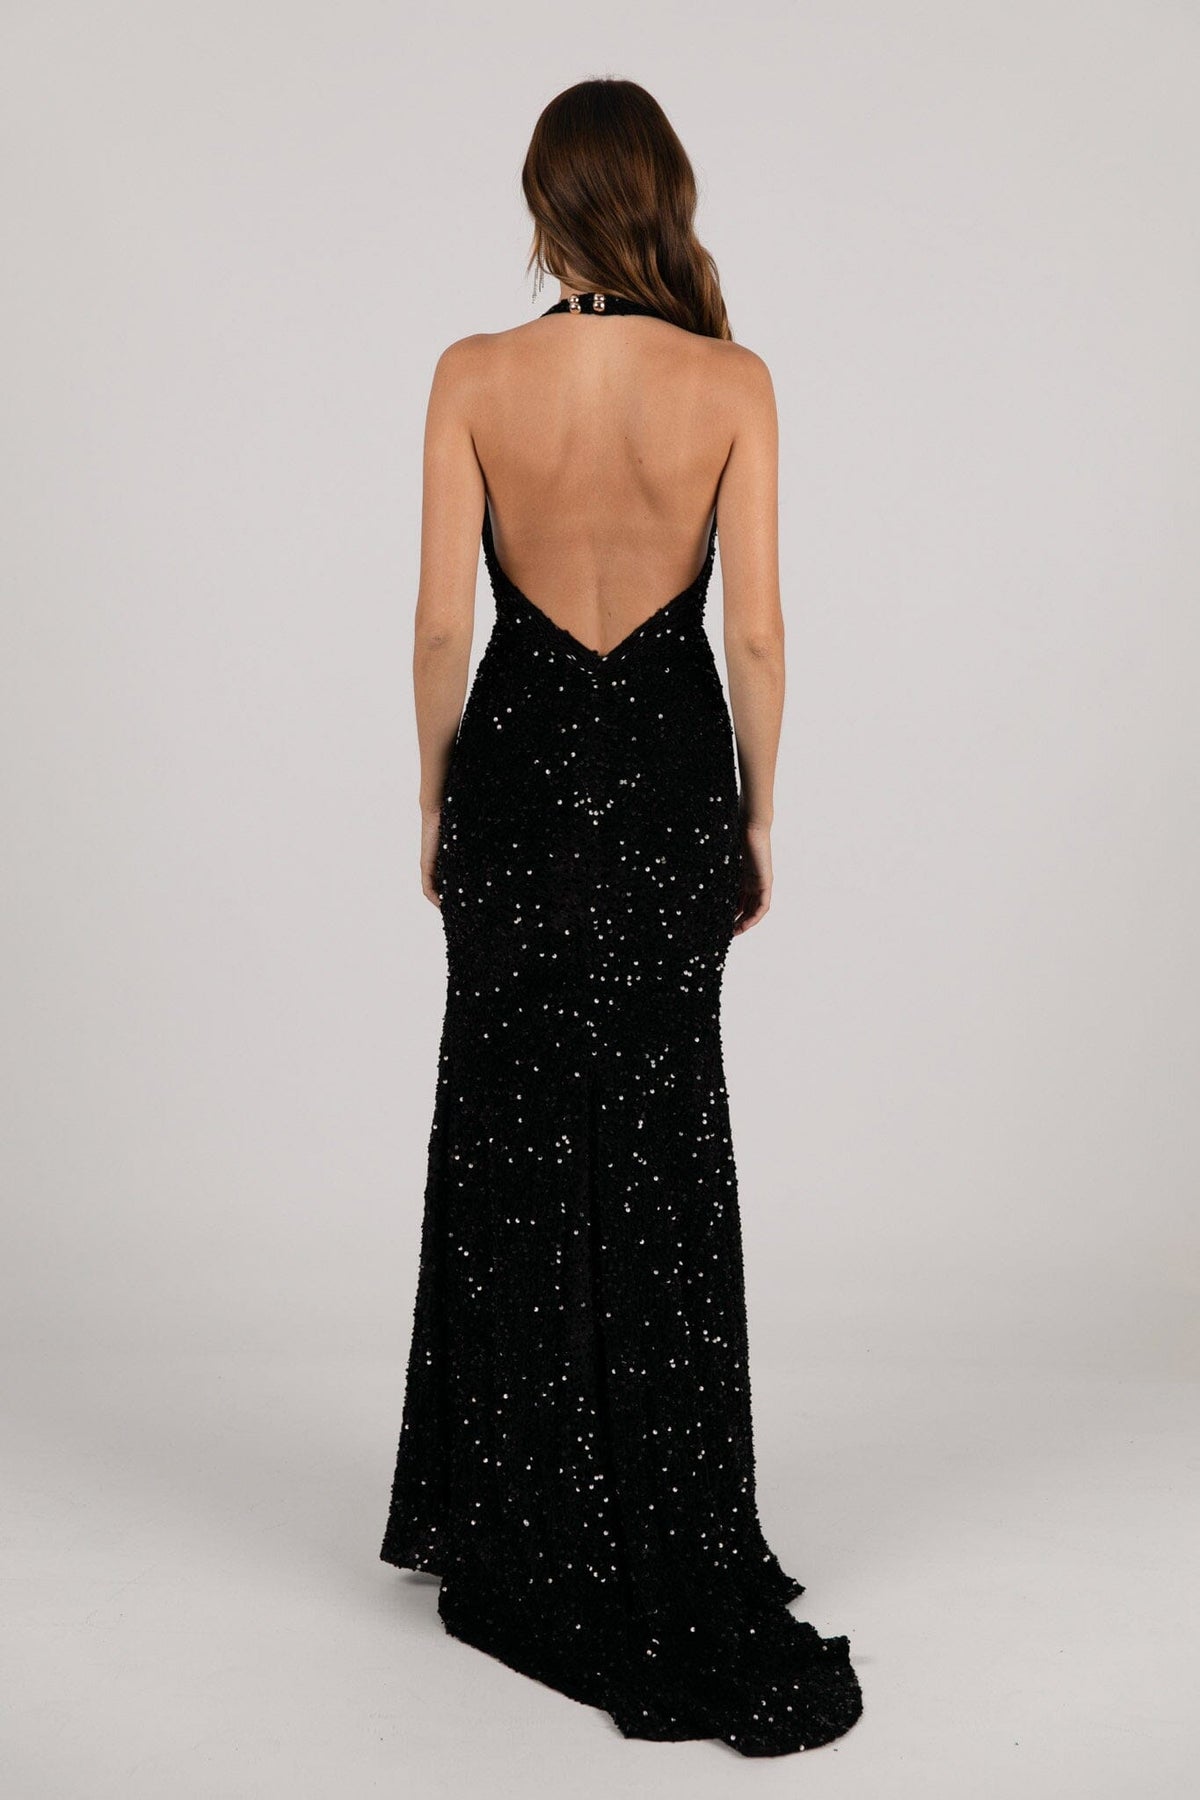 V Shape Backless Design of Black Velvet Sequin Fitted Evening Gown with Halter Neck and Side Slit